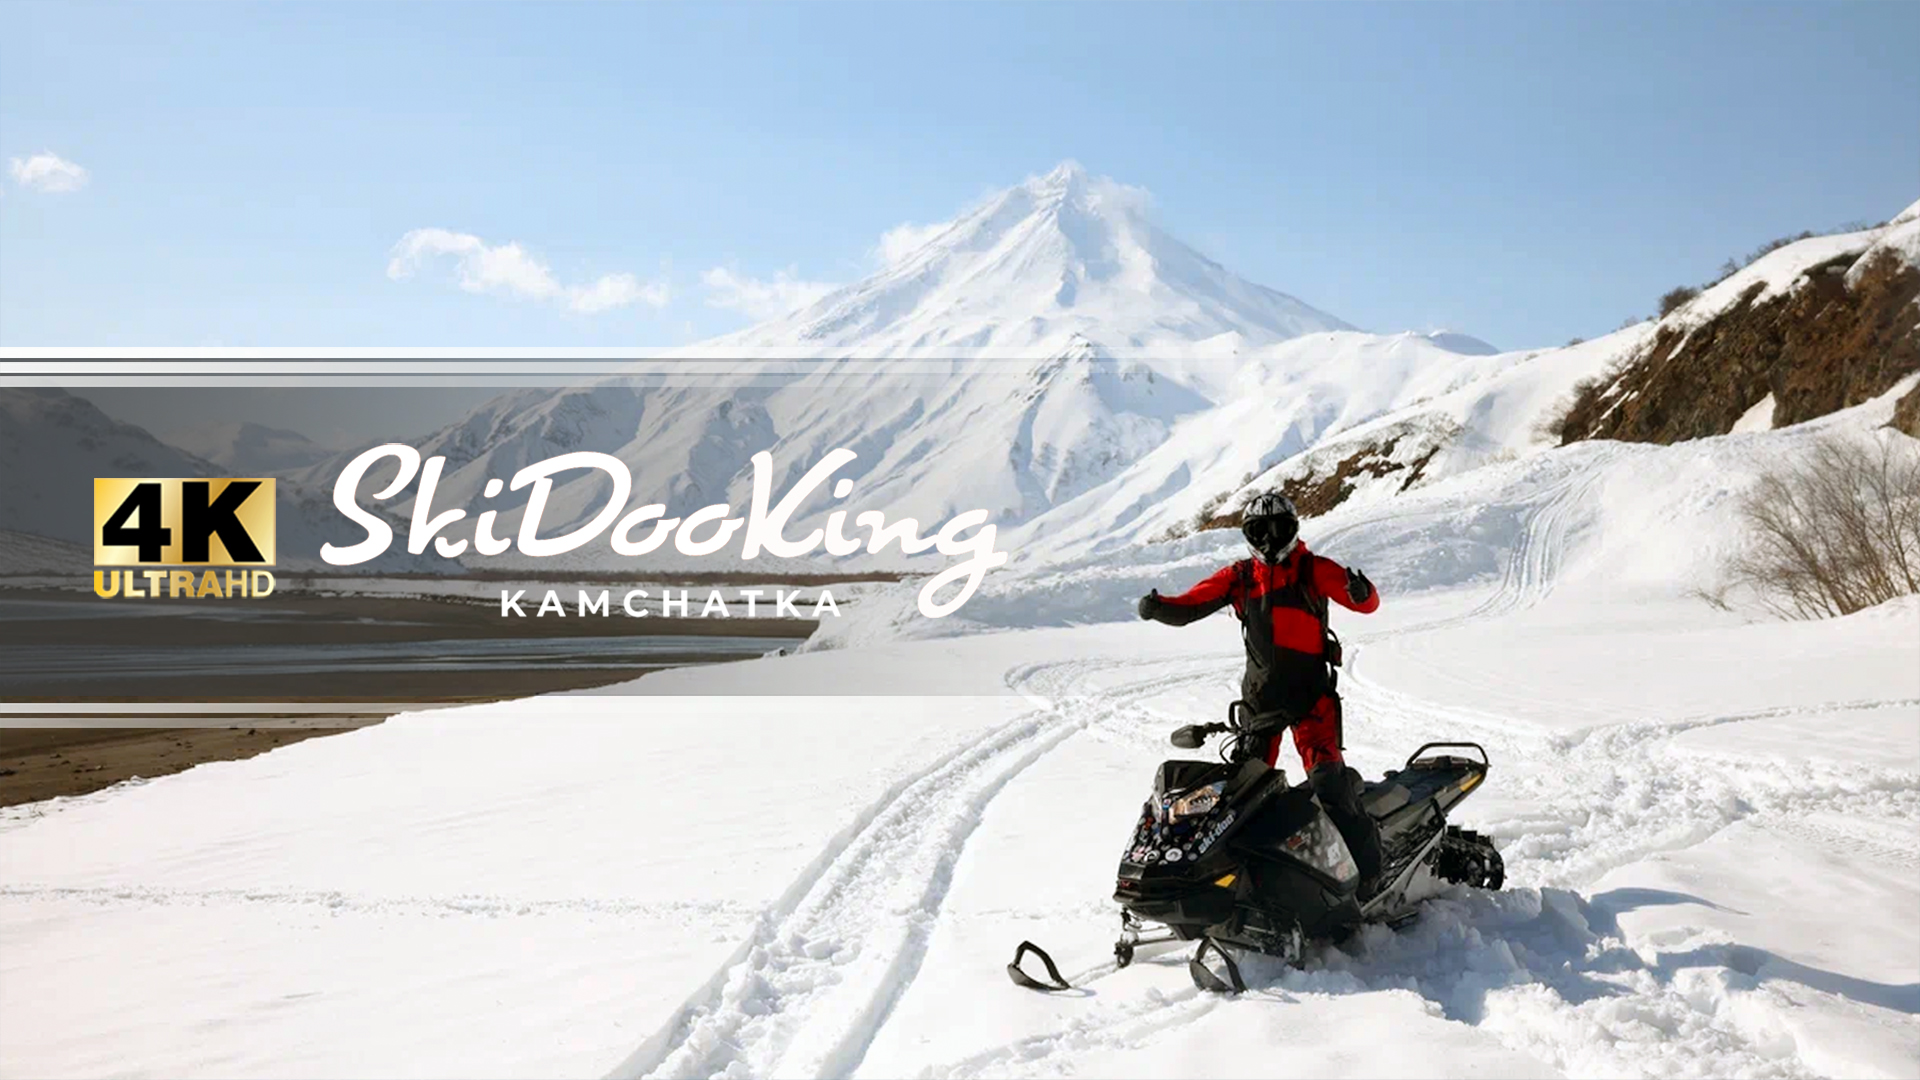 SkiDooKing Kamchatka - первая российская снегоходная школа 4К